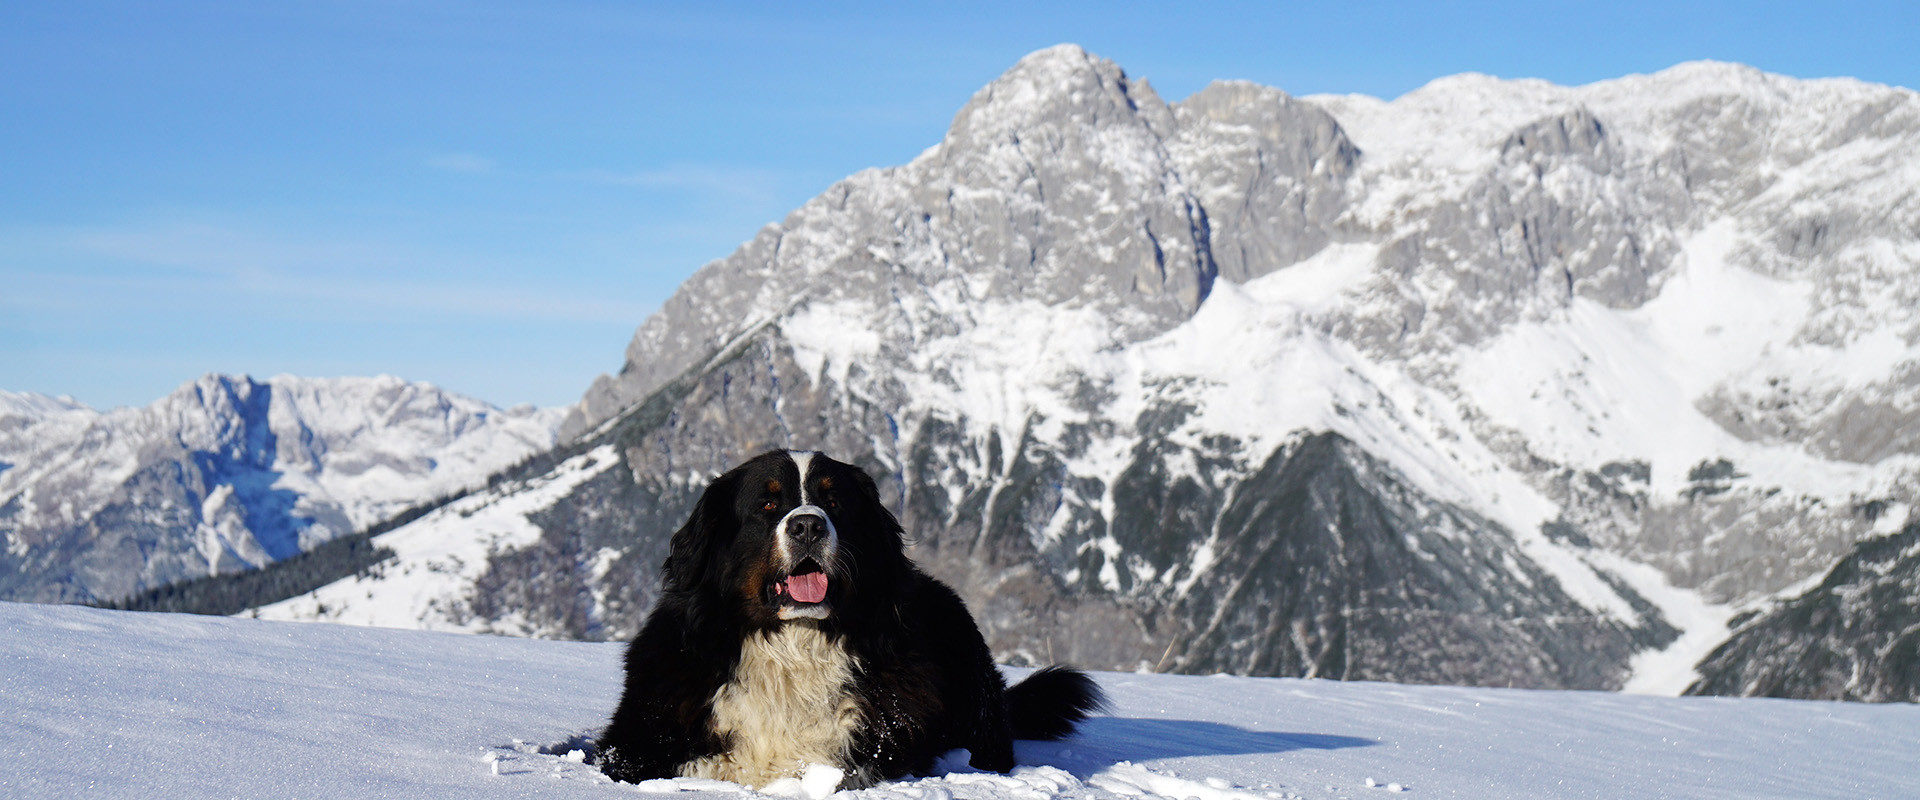 Hund liegt im Schnee mit dem Tennengebirge im Hintergrund.